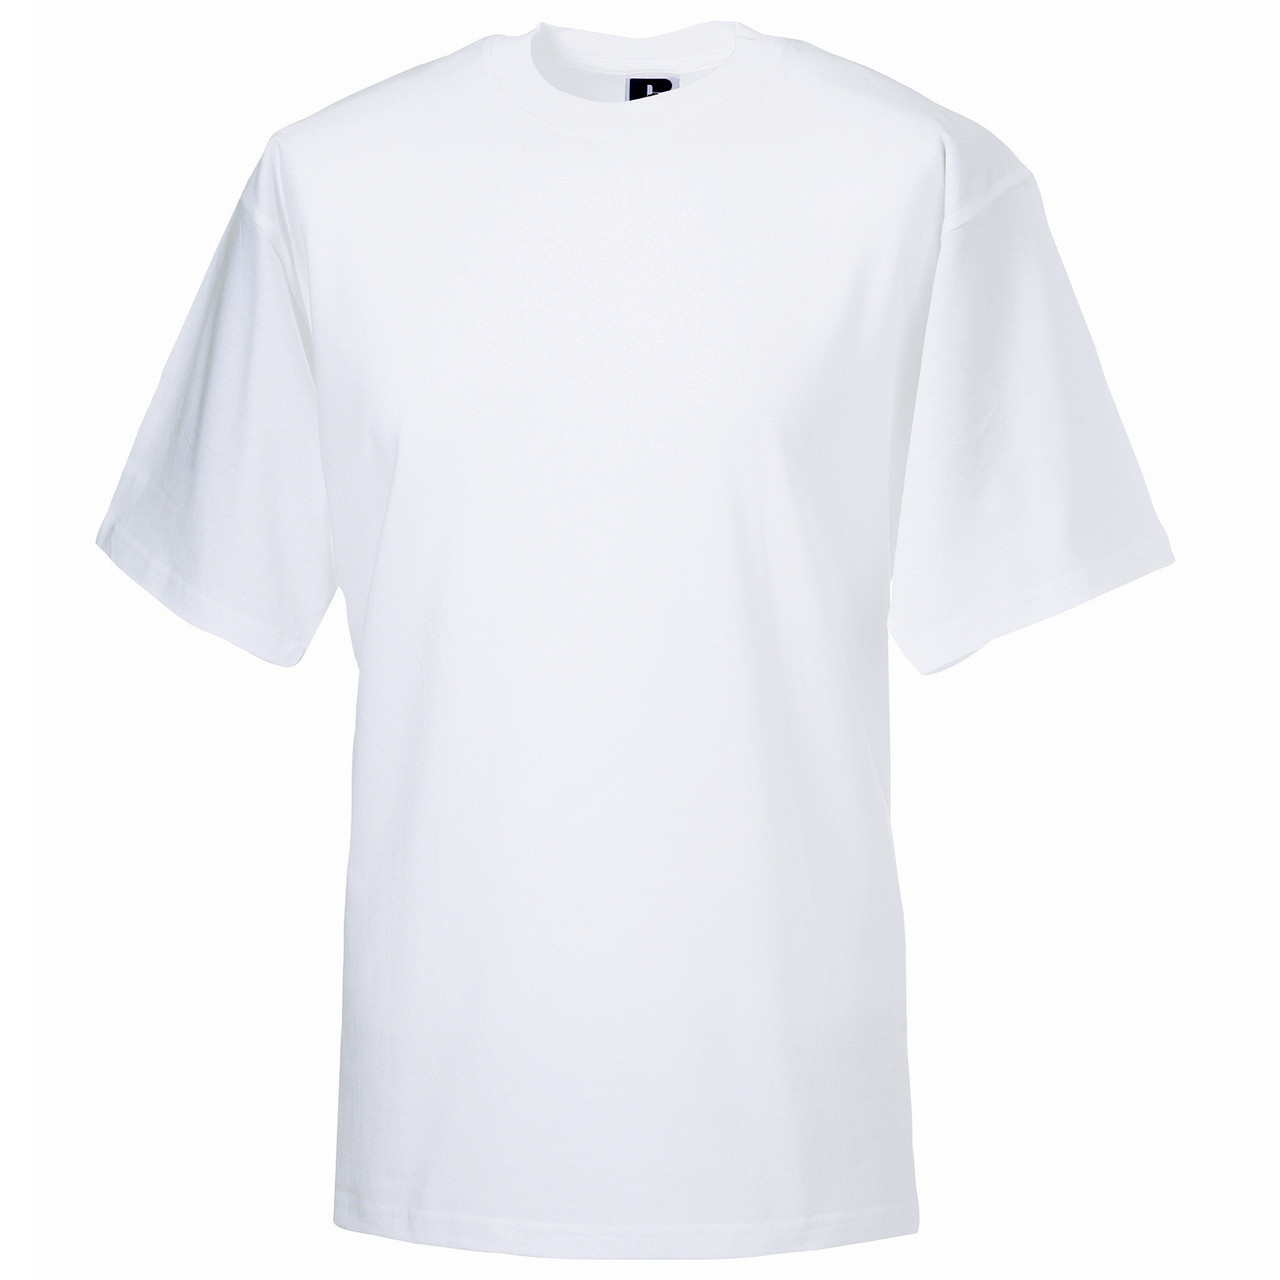 Childrens Plain White T Shirts Plain T-shirt Tops For Children | Venzero